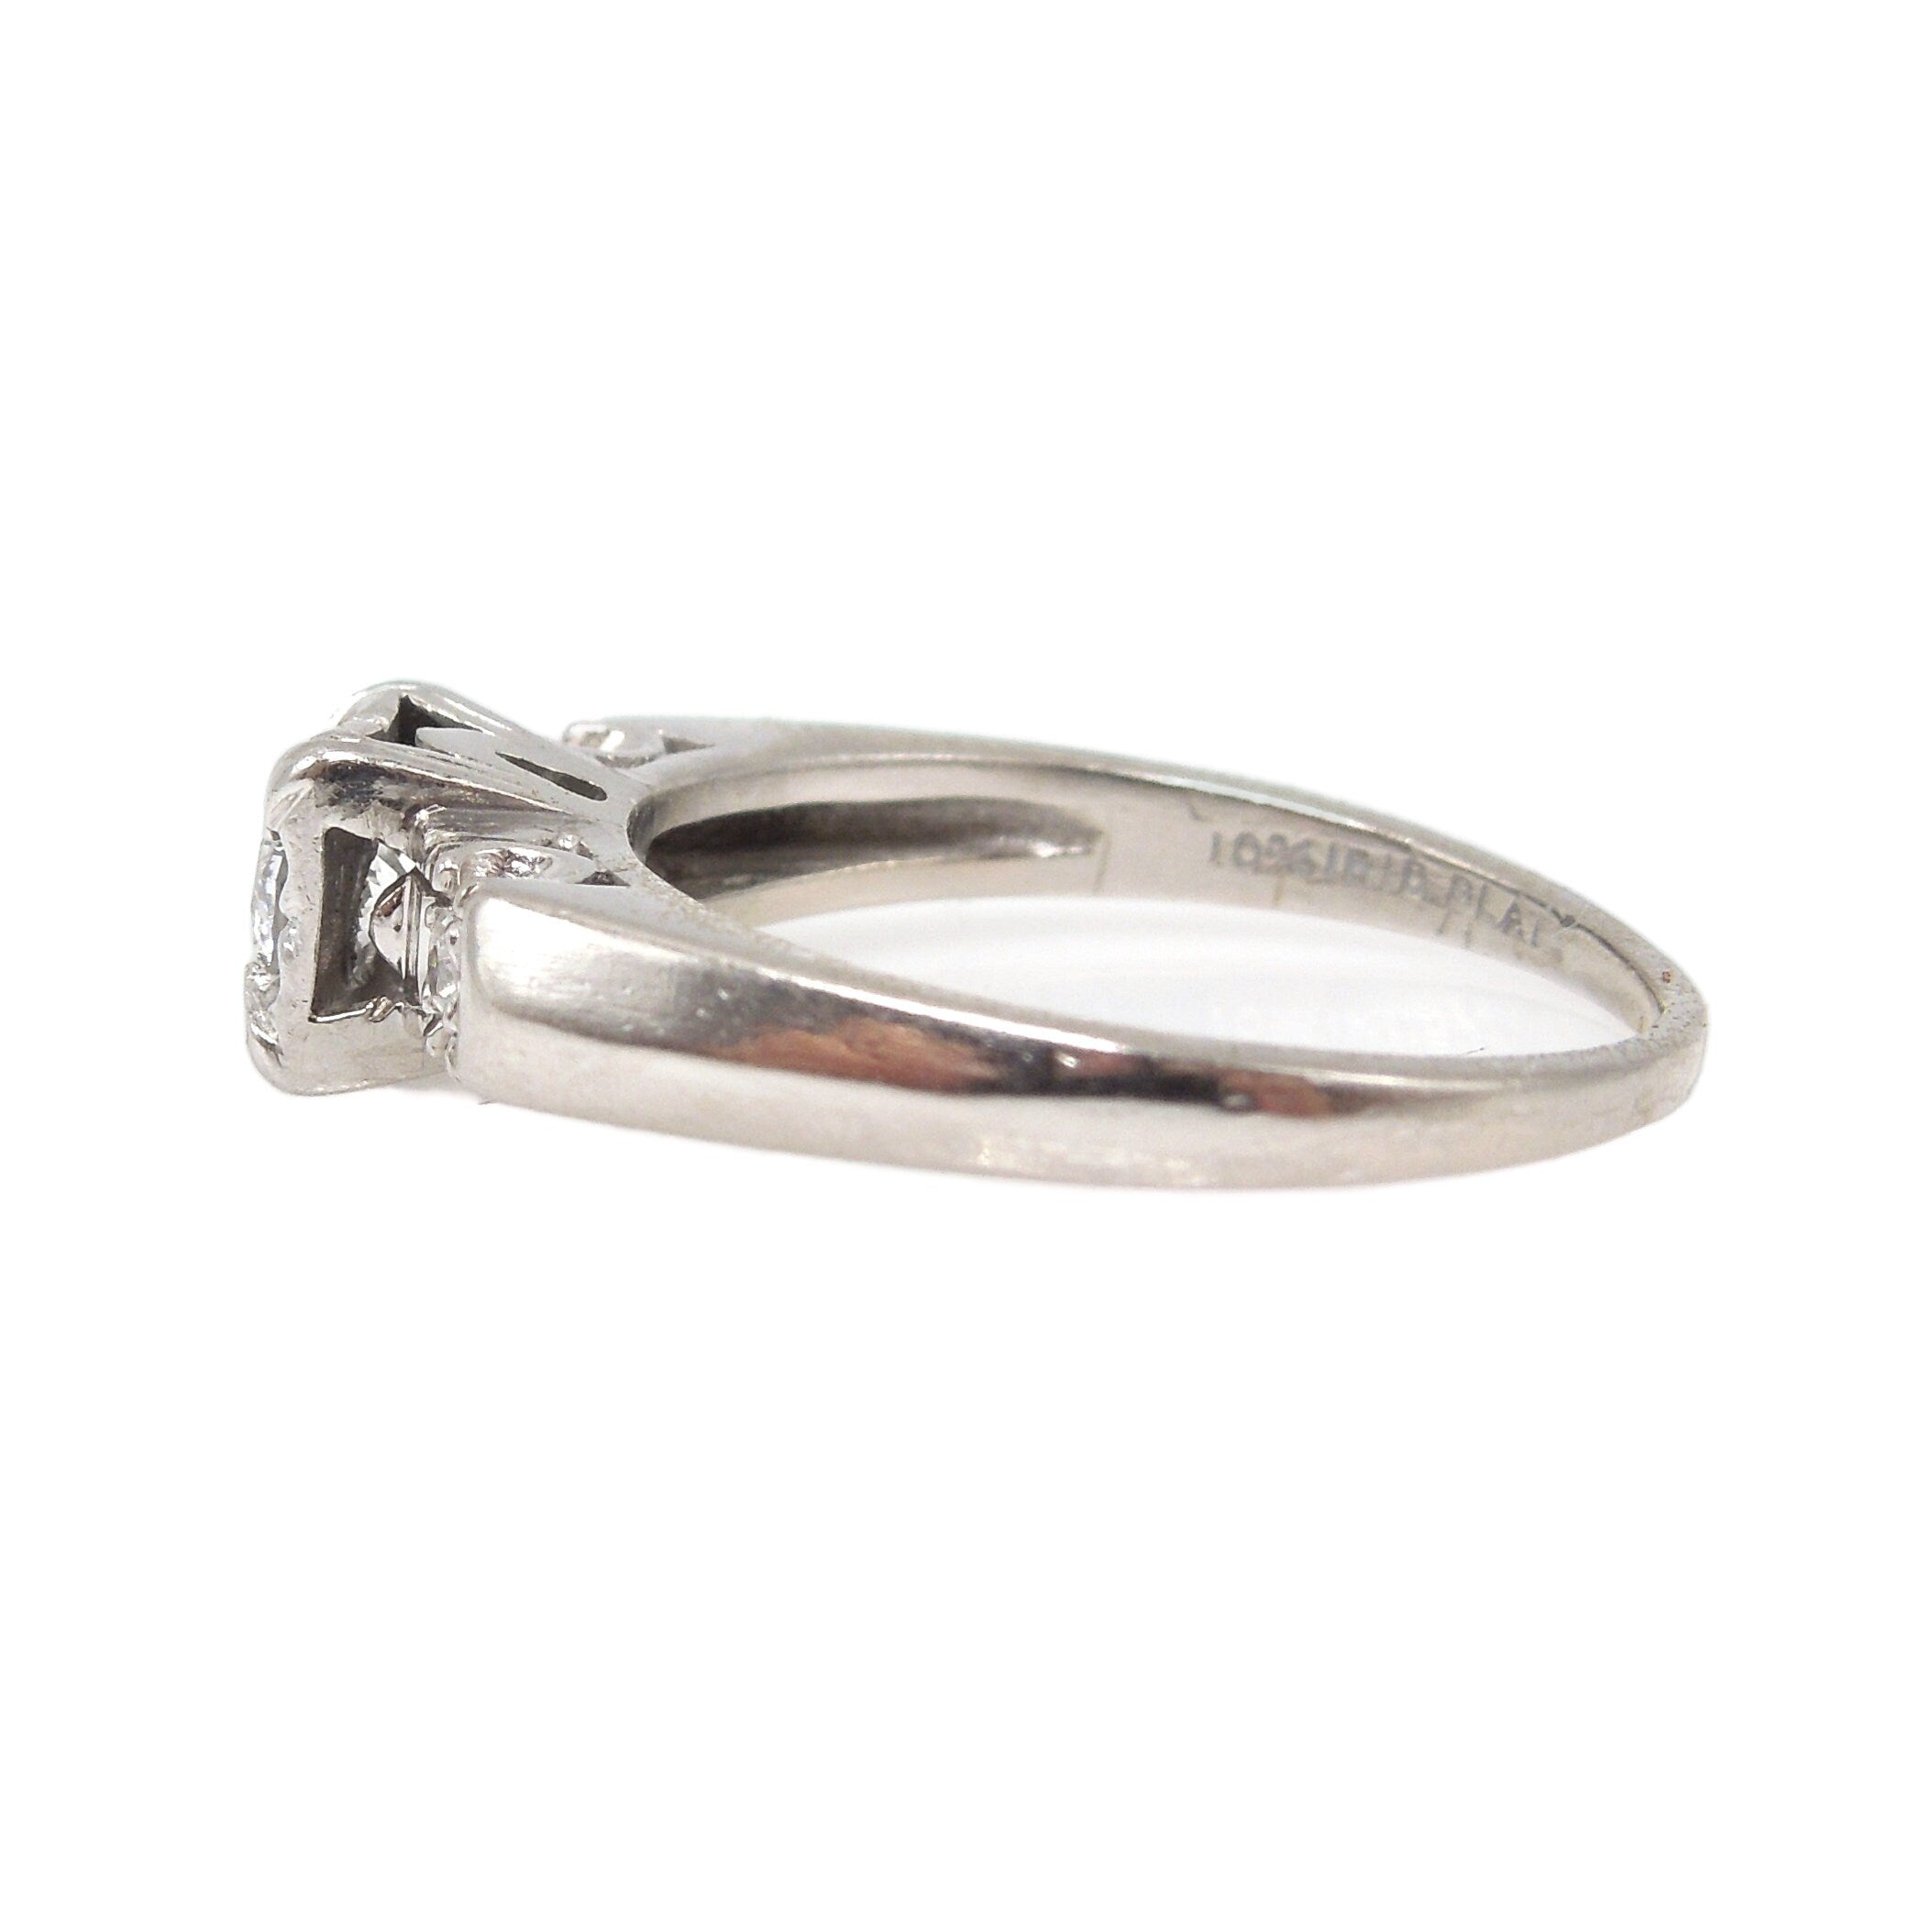 Quarter Carat (0.25ct) Platinum Illusion Set Diamond Engagement Ring with Accent Diamonds